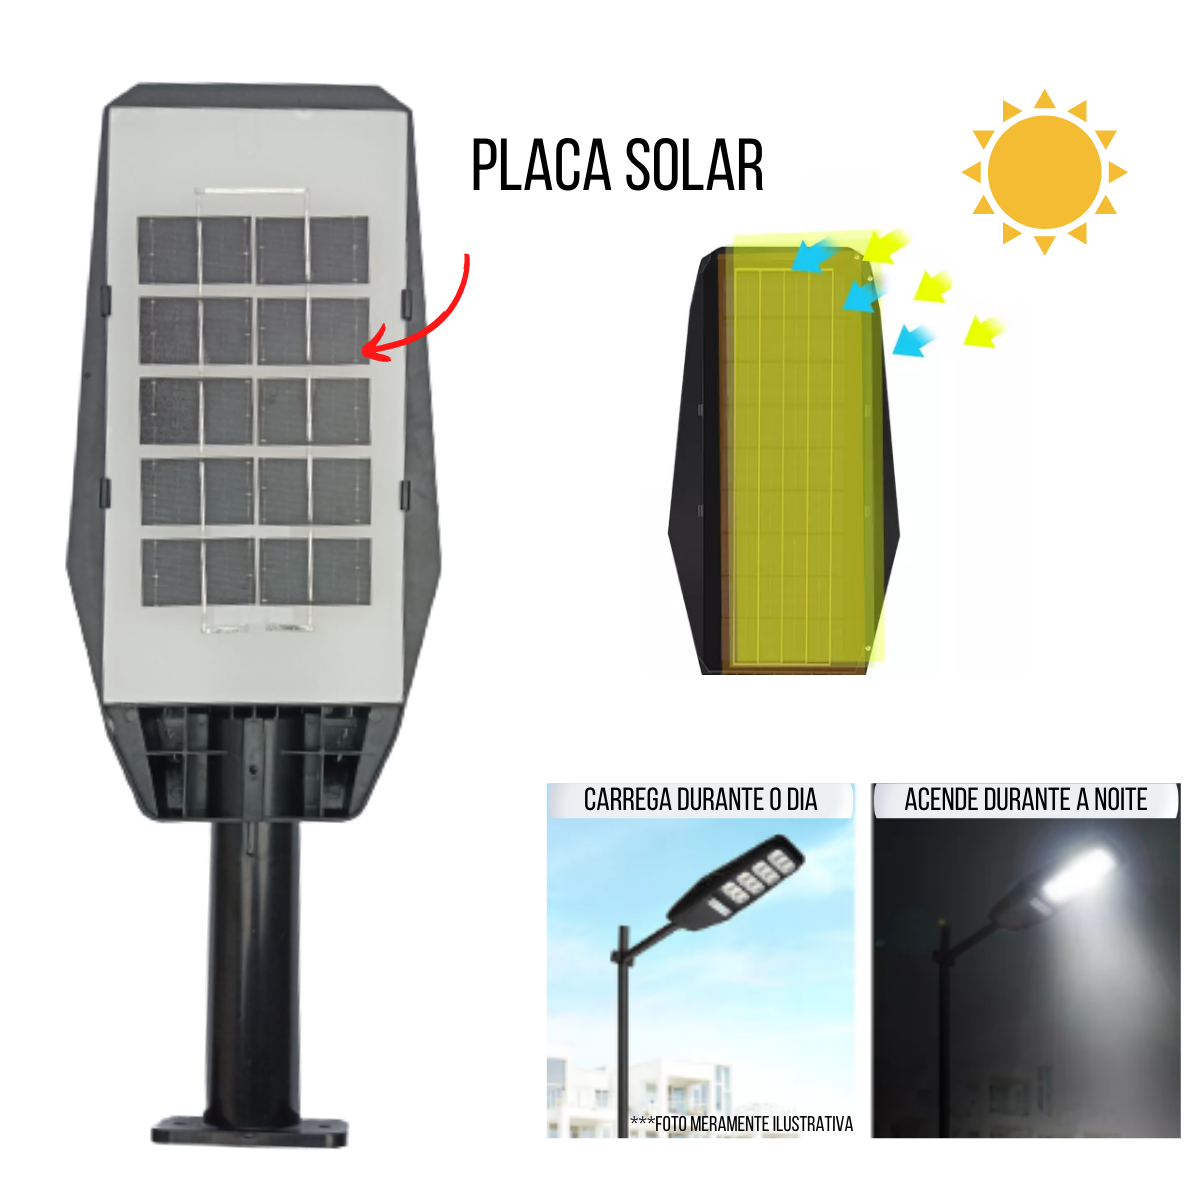 Luminária Lâmpada Energia Solar Externa 100W Com Controle E Sensor De Presença A Prova De Água IP65 - 4